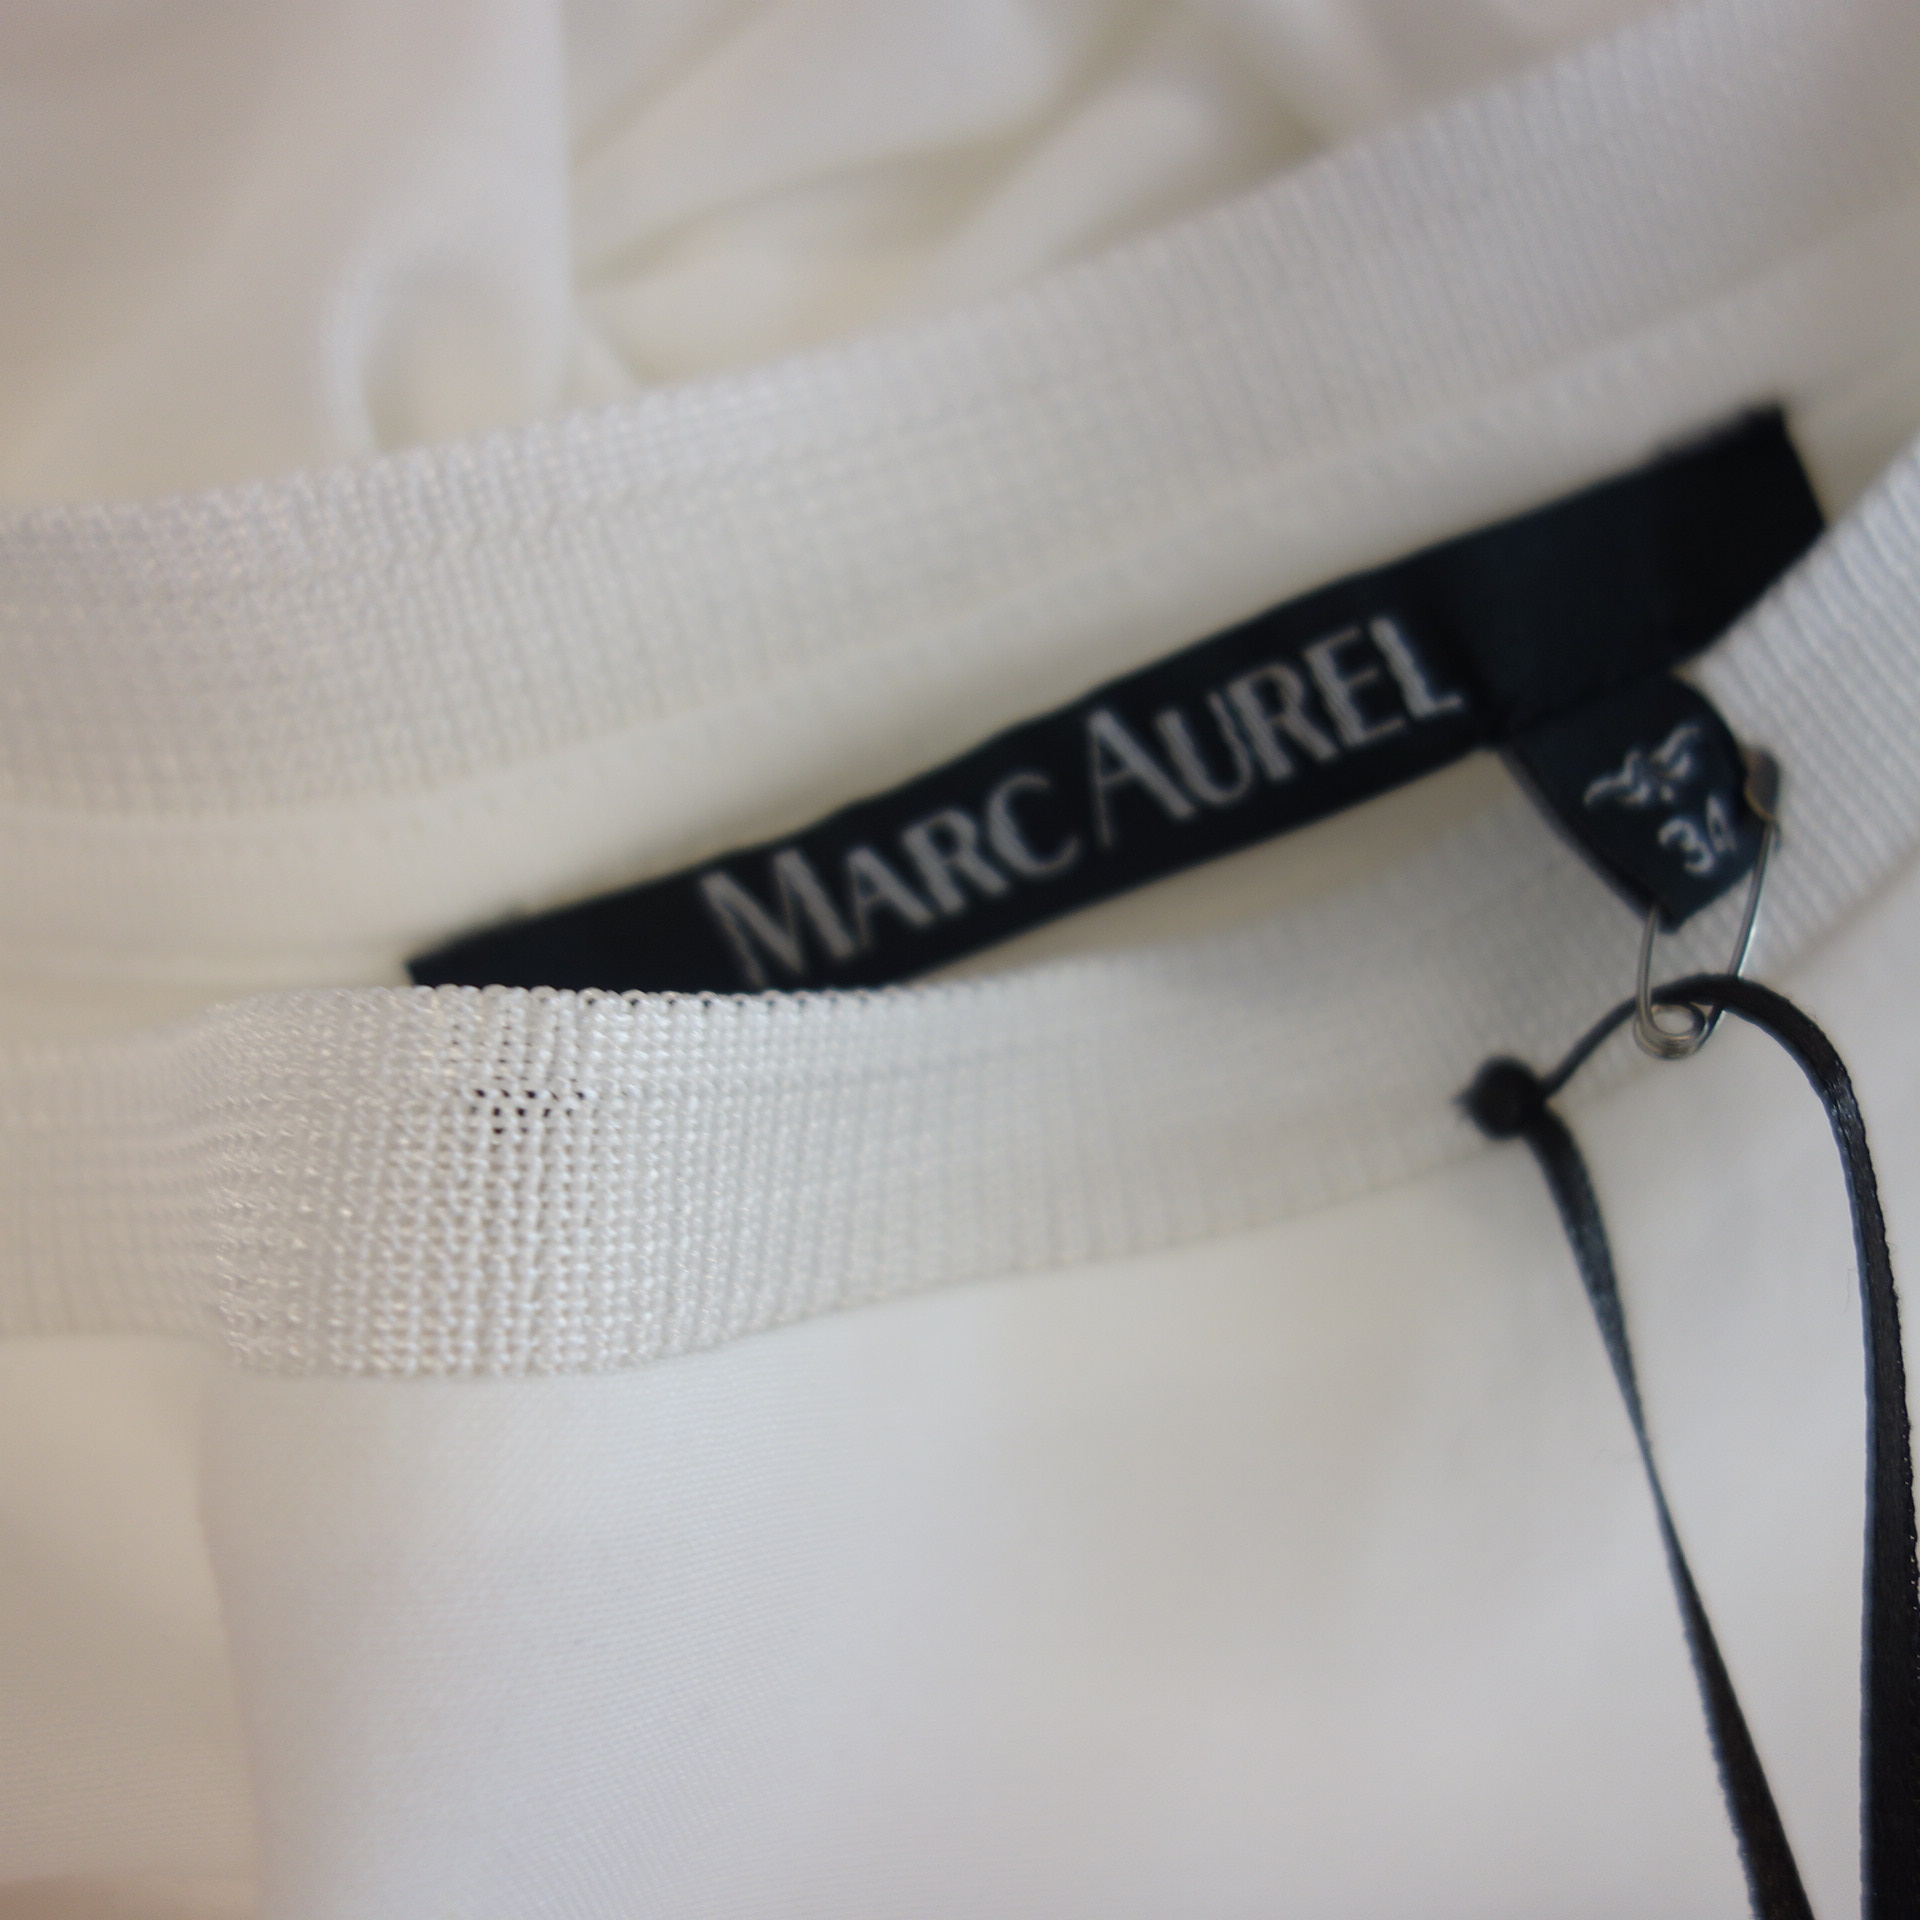 MARC AUREL Damen T Shirt T-Shirt Oberteil Weiß mit Print 100% Viskose